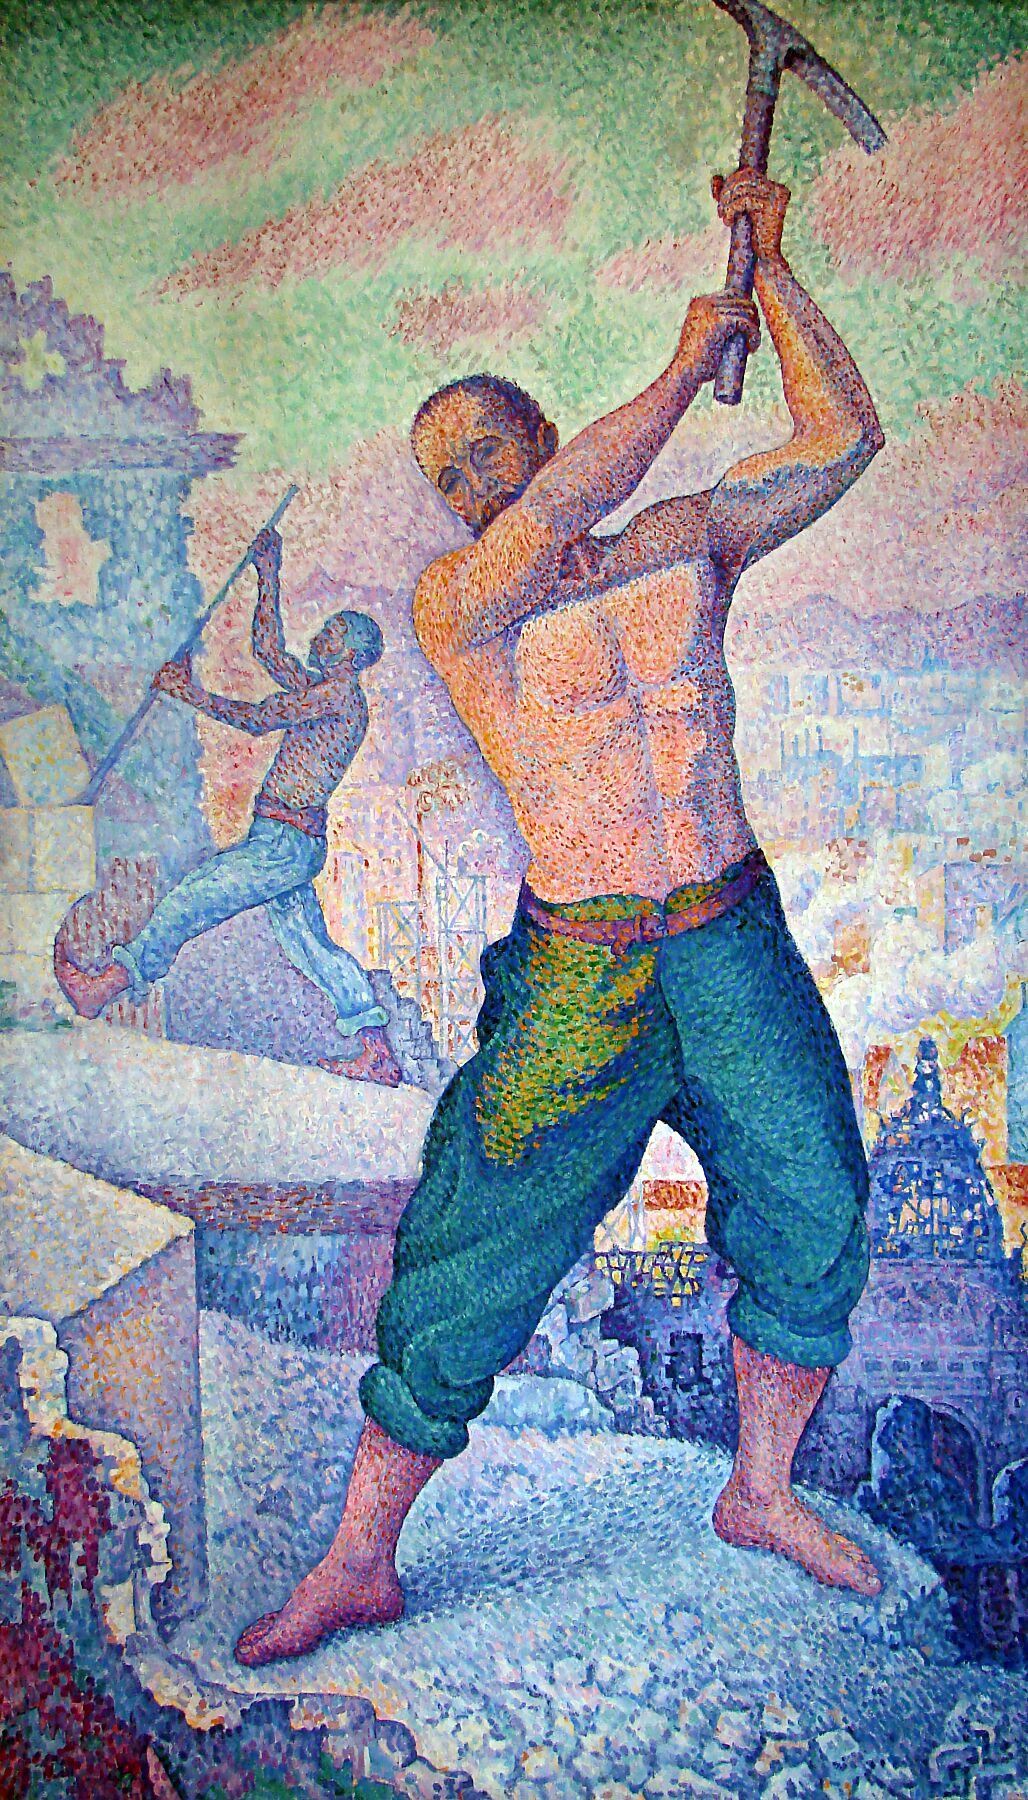 Le Démolisseur by Paul Signac - c. 1897